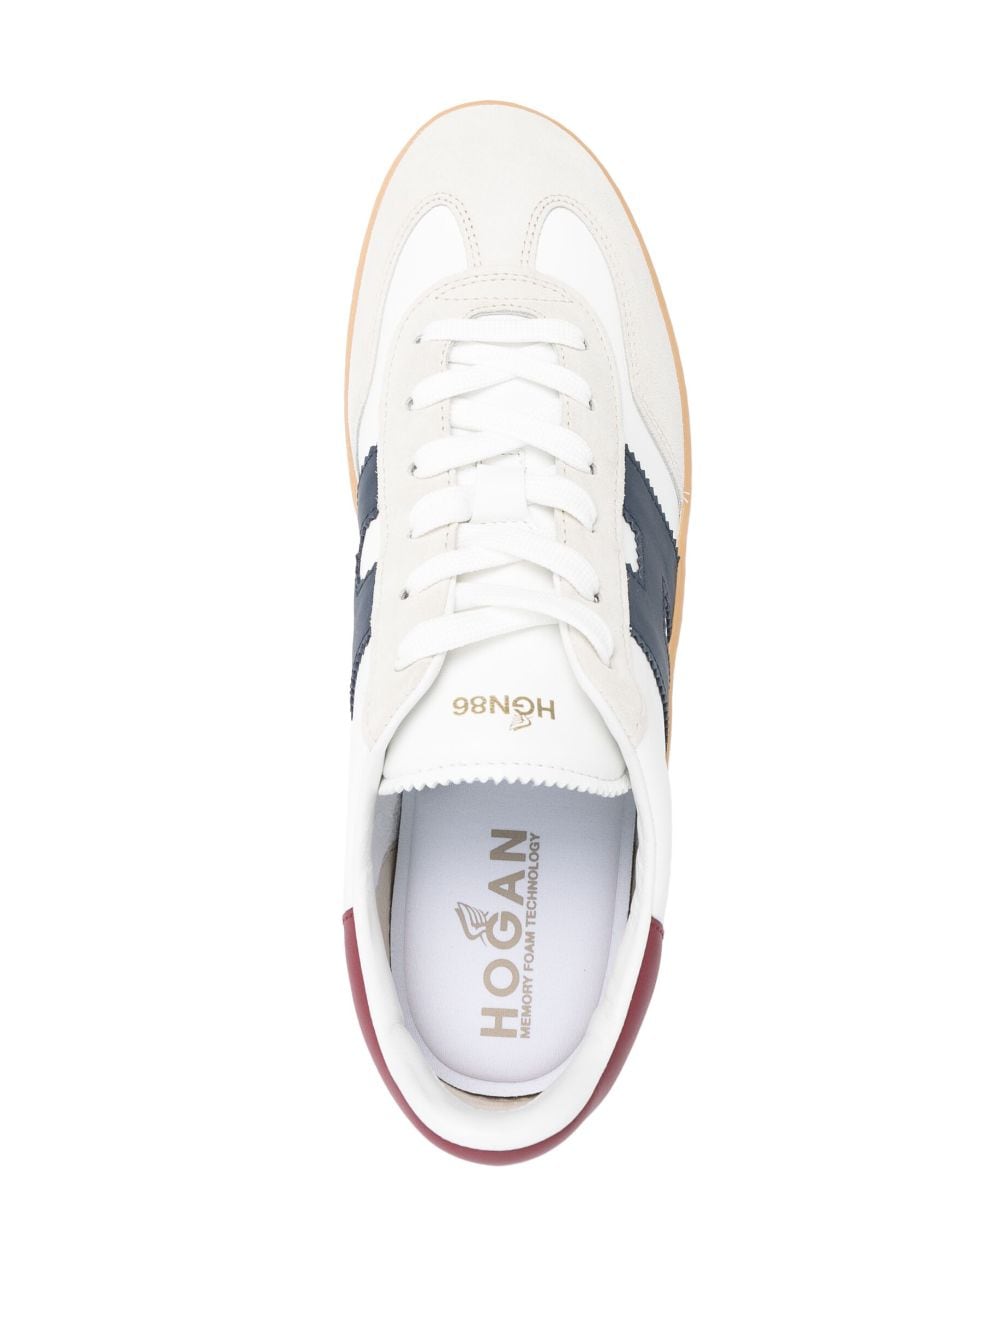 Hogan Pre Sneakers White